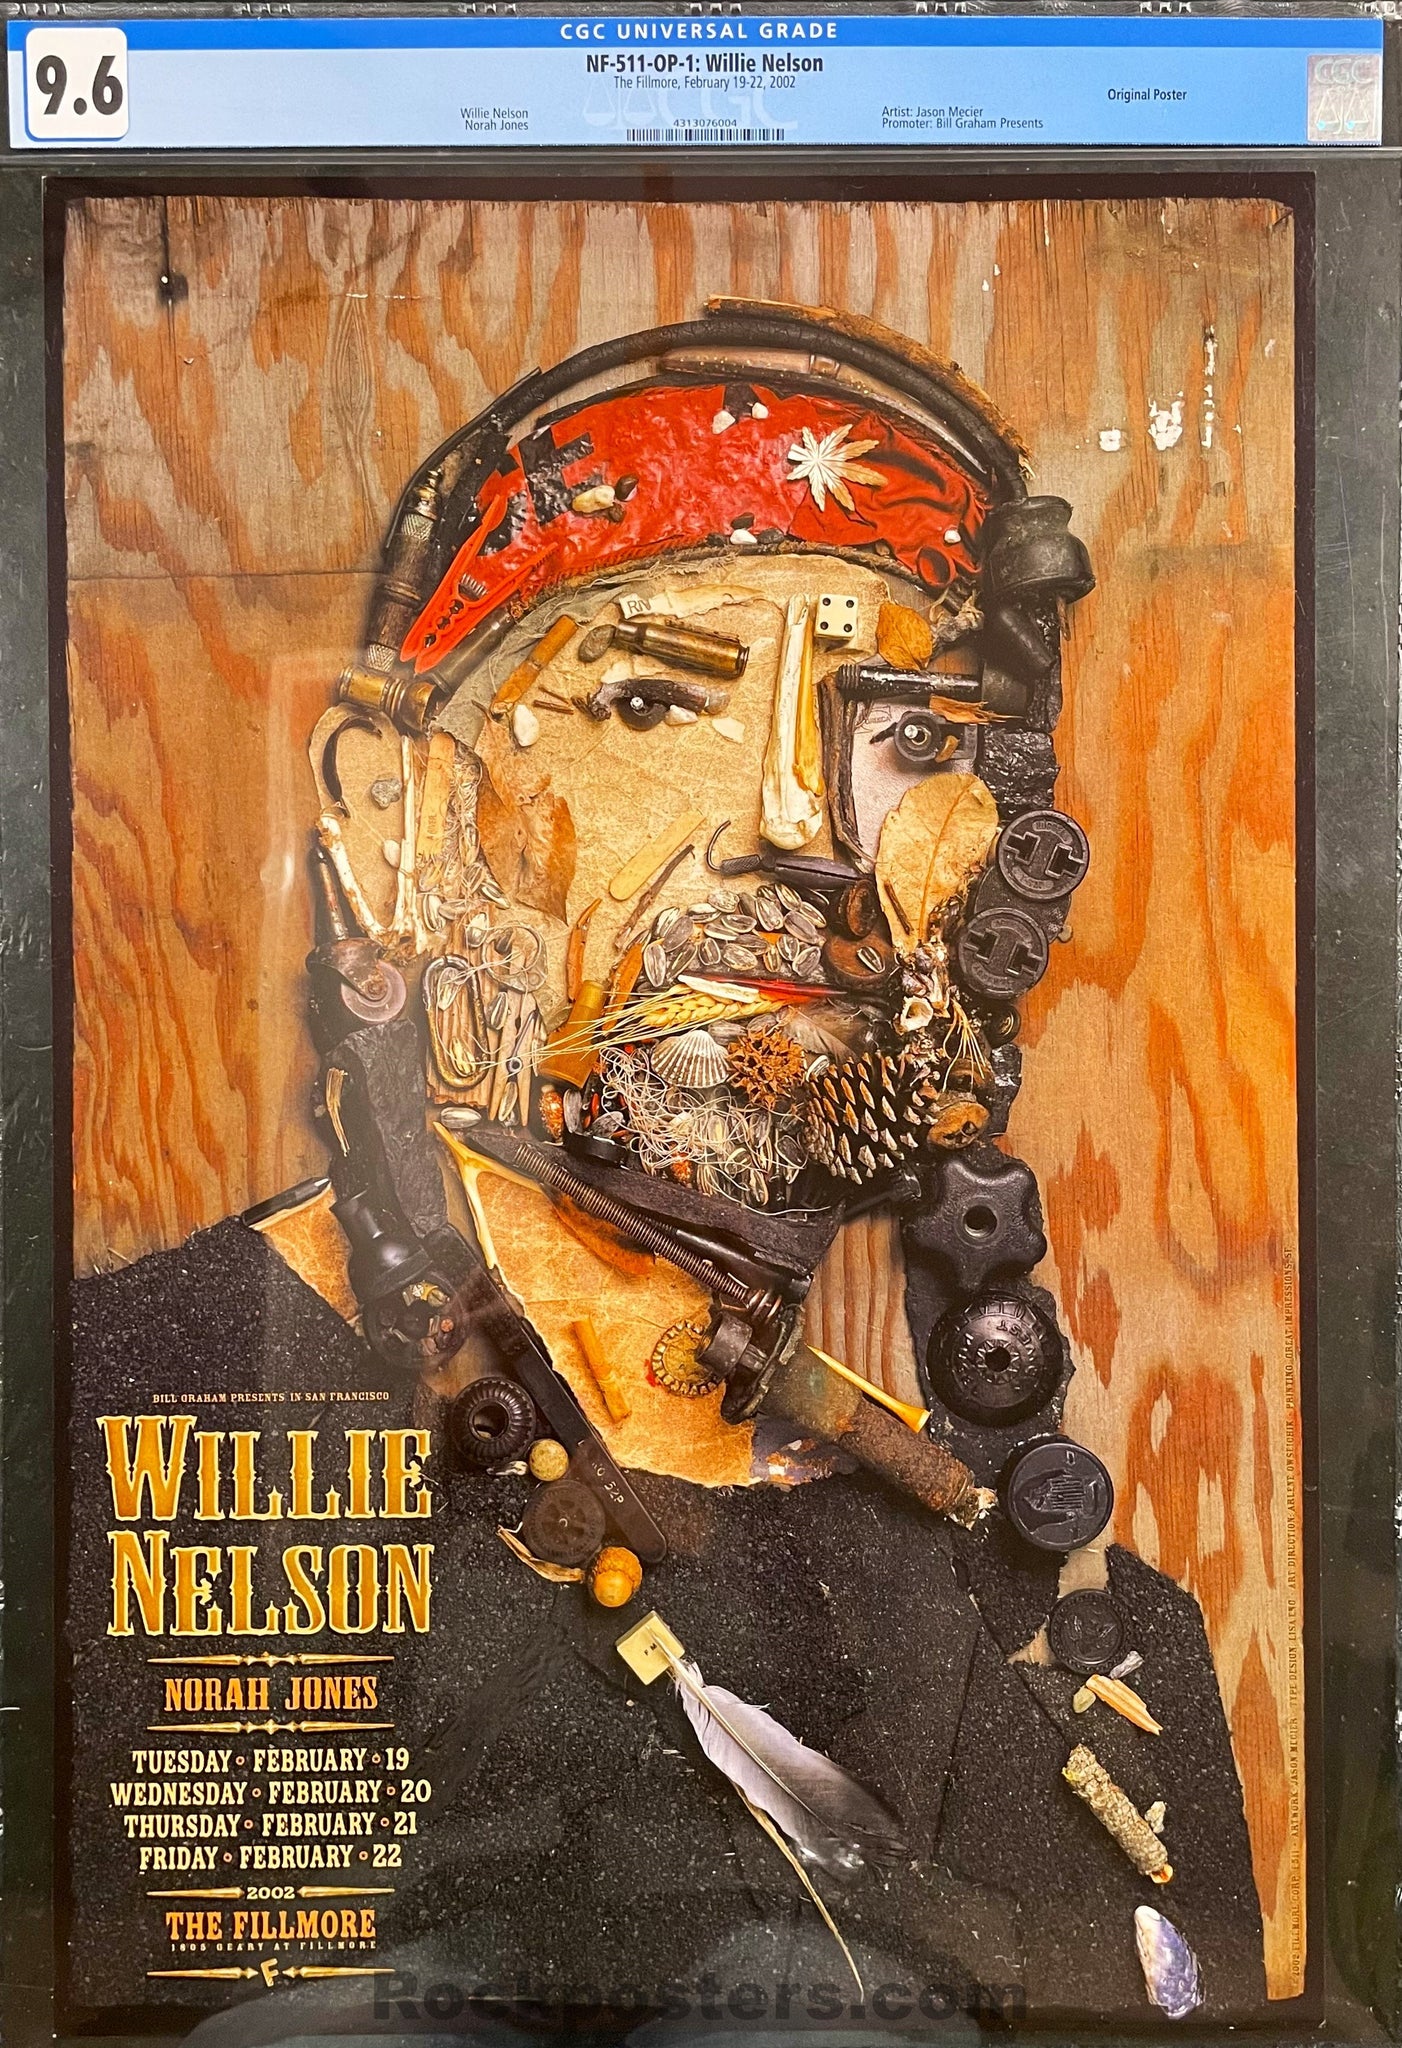 NF-511 - Willie Nelson - Norah Jones - 2002 Poster - The Fillmore - CGC Graded 9.6